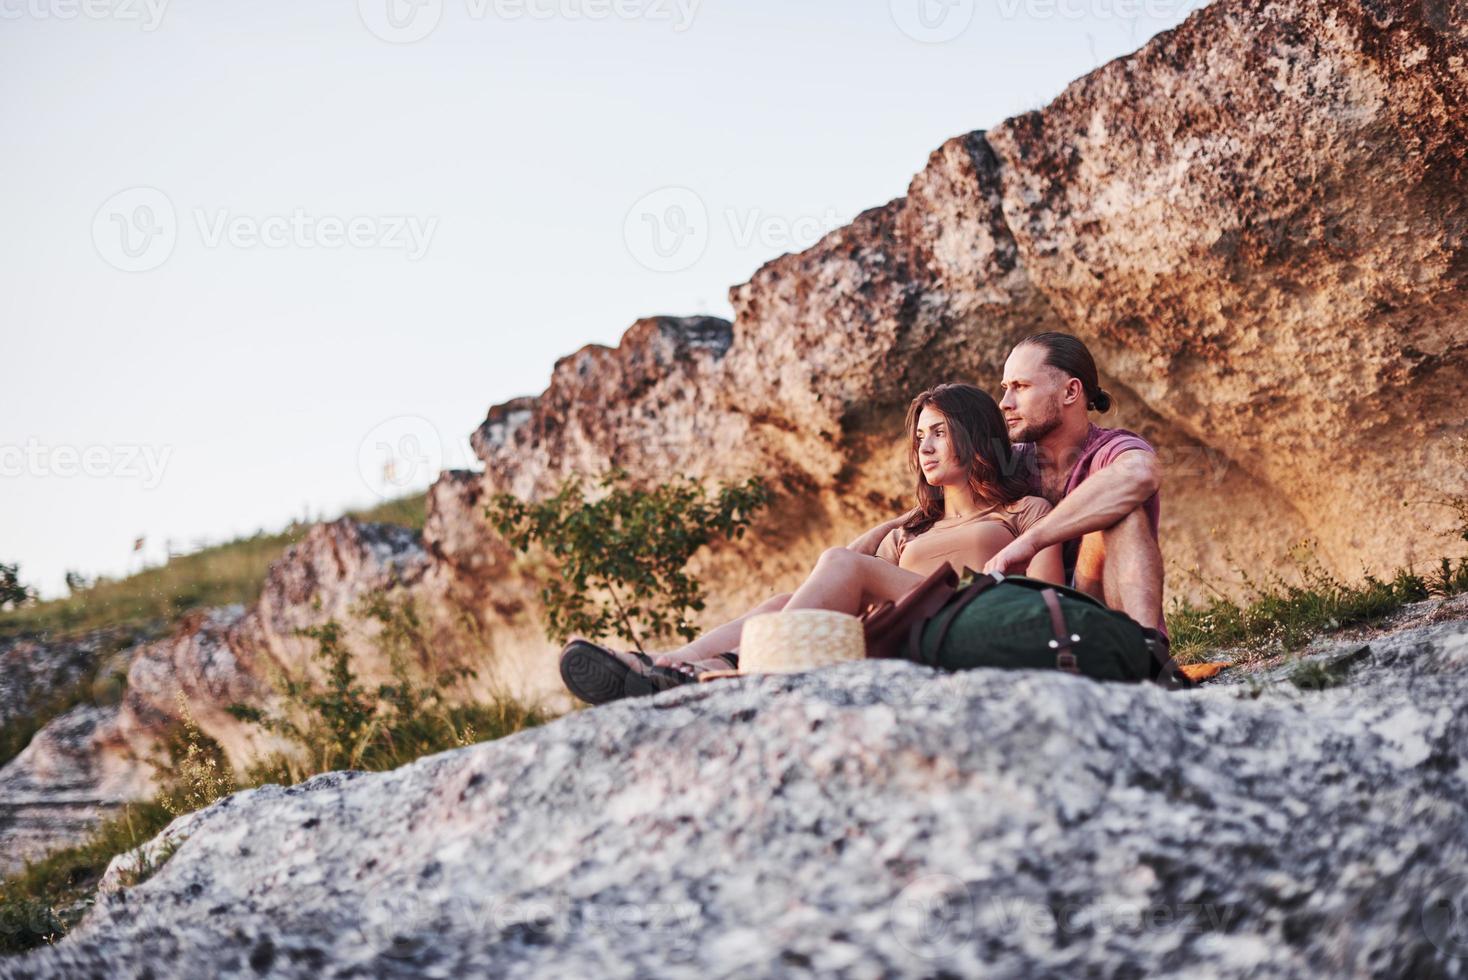 träumende Stimmung. Zwei Personen sitzen auf dem Felsen und beobachten die wunderschöne Natur foto